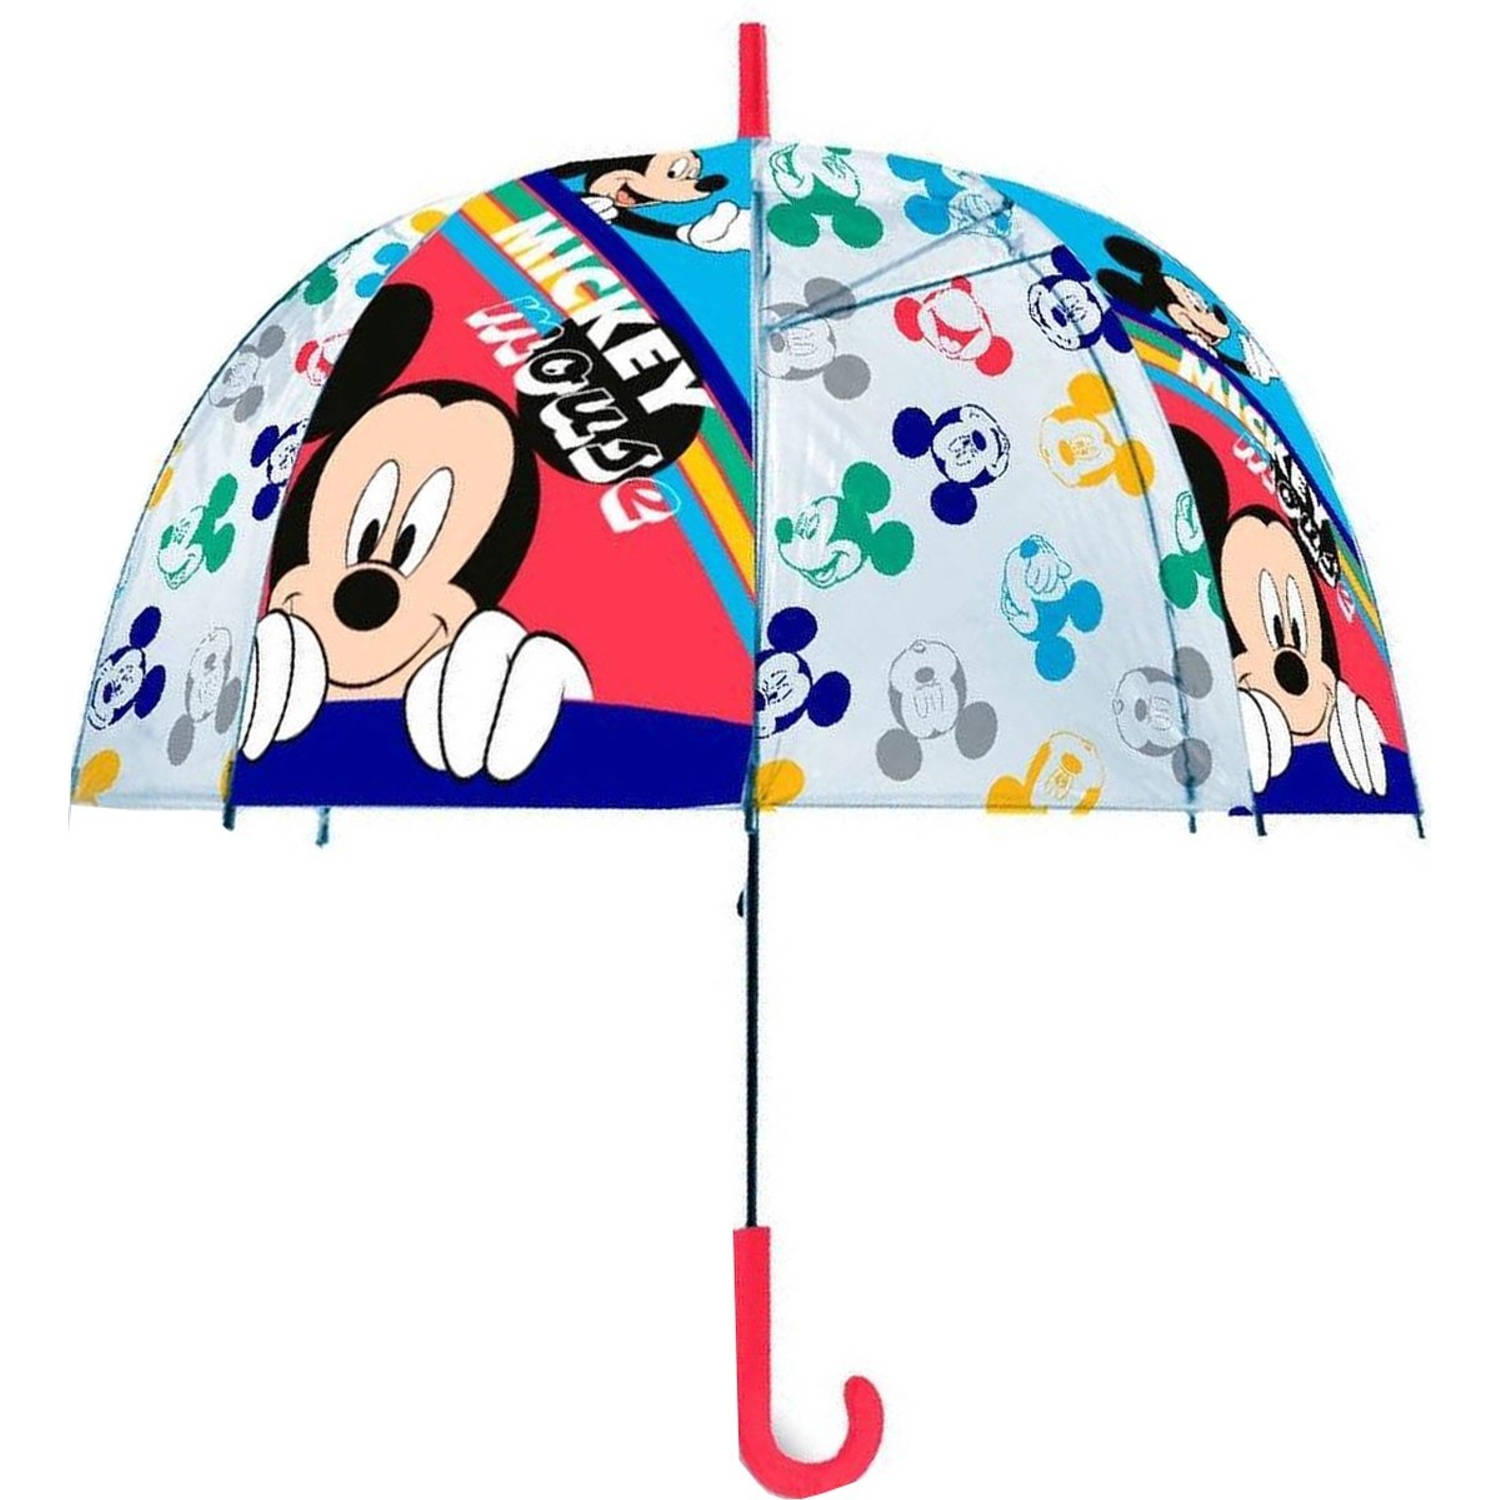 Kinderparaplu - Micky mouse Kinderparaplu's - Disney Mickey mouse Kinderparaplu - Paraplu - Paraplu kopen - Paraplu kind - Paraplumerk - automatische paraplu - Kinder paraplu - Par